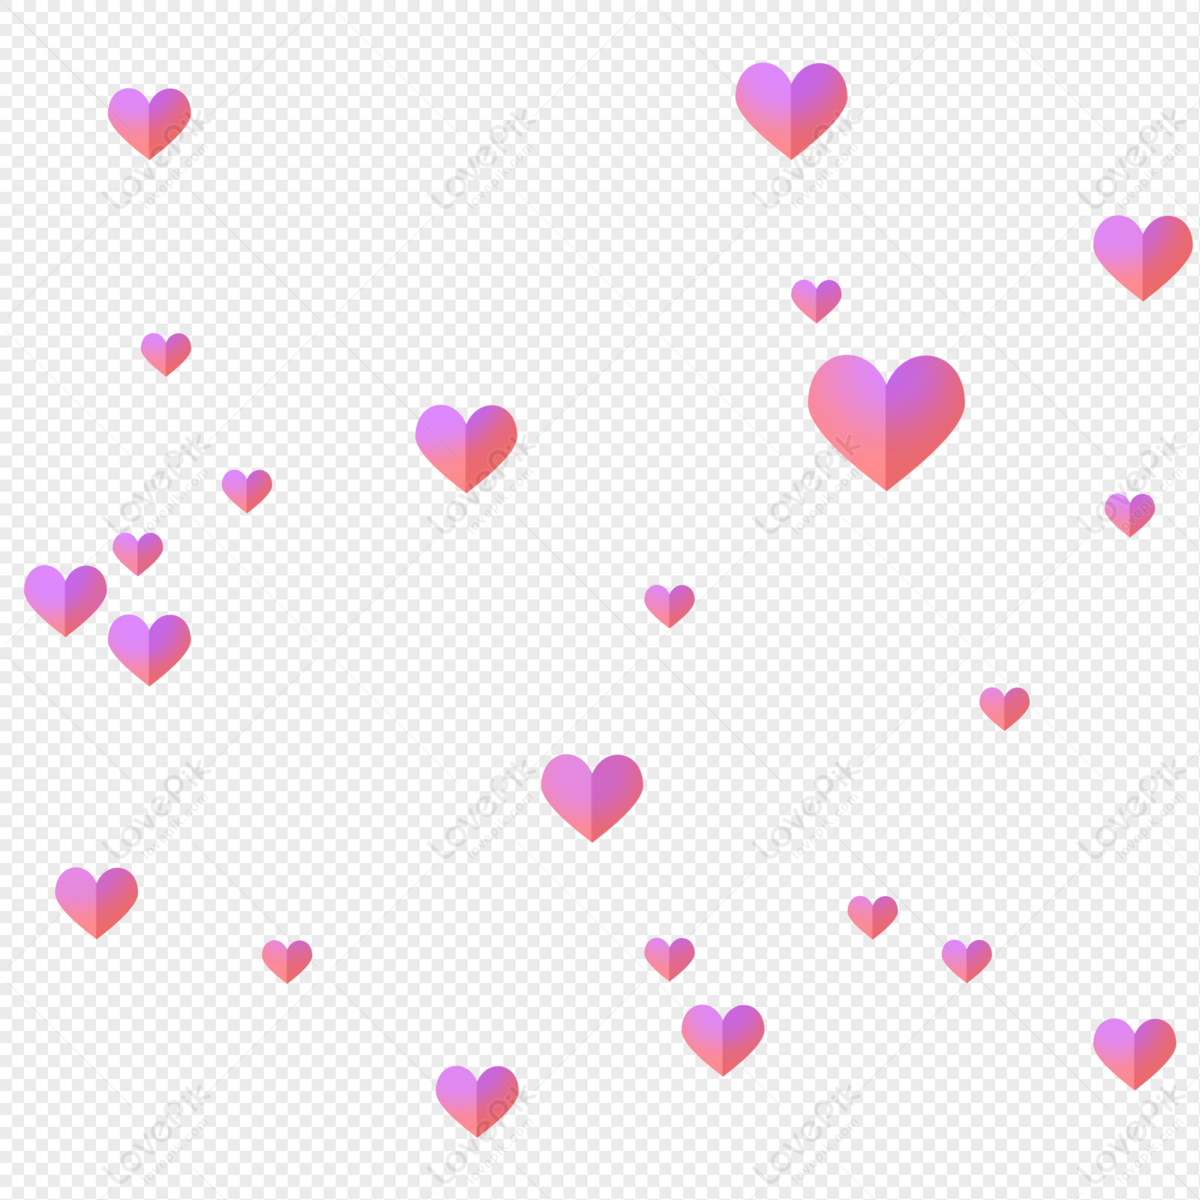 Hình ảnh tình yêu PNG màu hồng là sự lựa chọn tuyệt vời để thể hiện tình cảm và tình yêu của bạn. Hãy để những tấm ảnh màu hồng truyền tải những thông điệp yêu thương và sự ấm áp đến người thân trong cuộc sống của bạn.